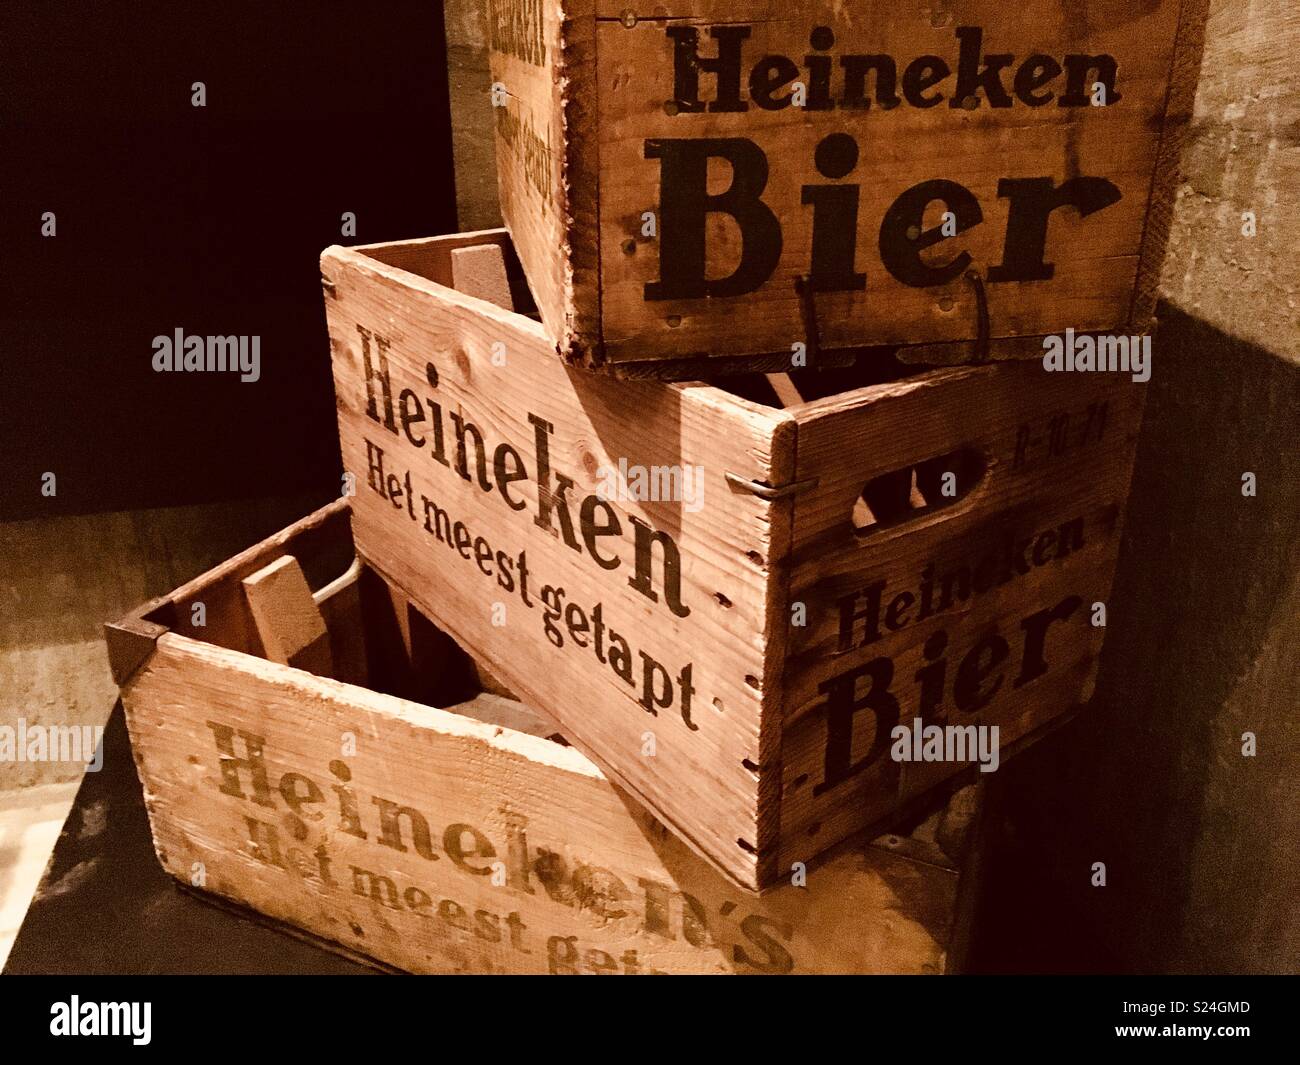 Old wooden boxes of Heineken beer Stock Photo